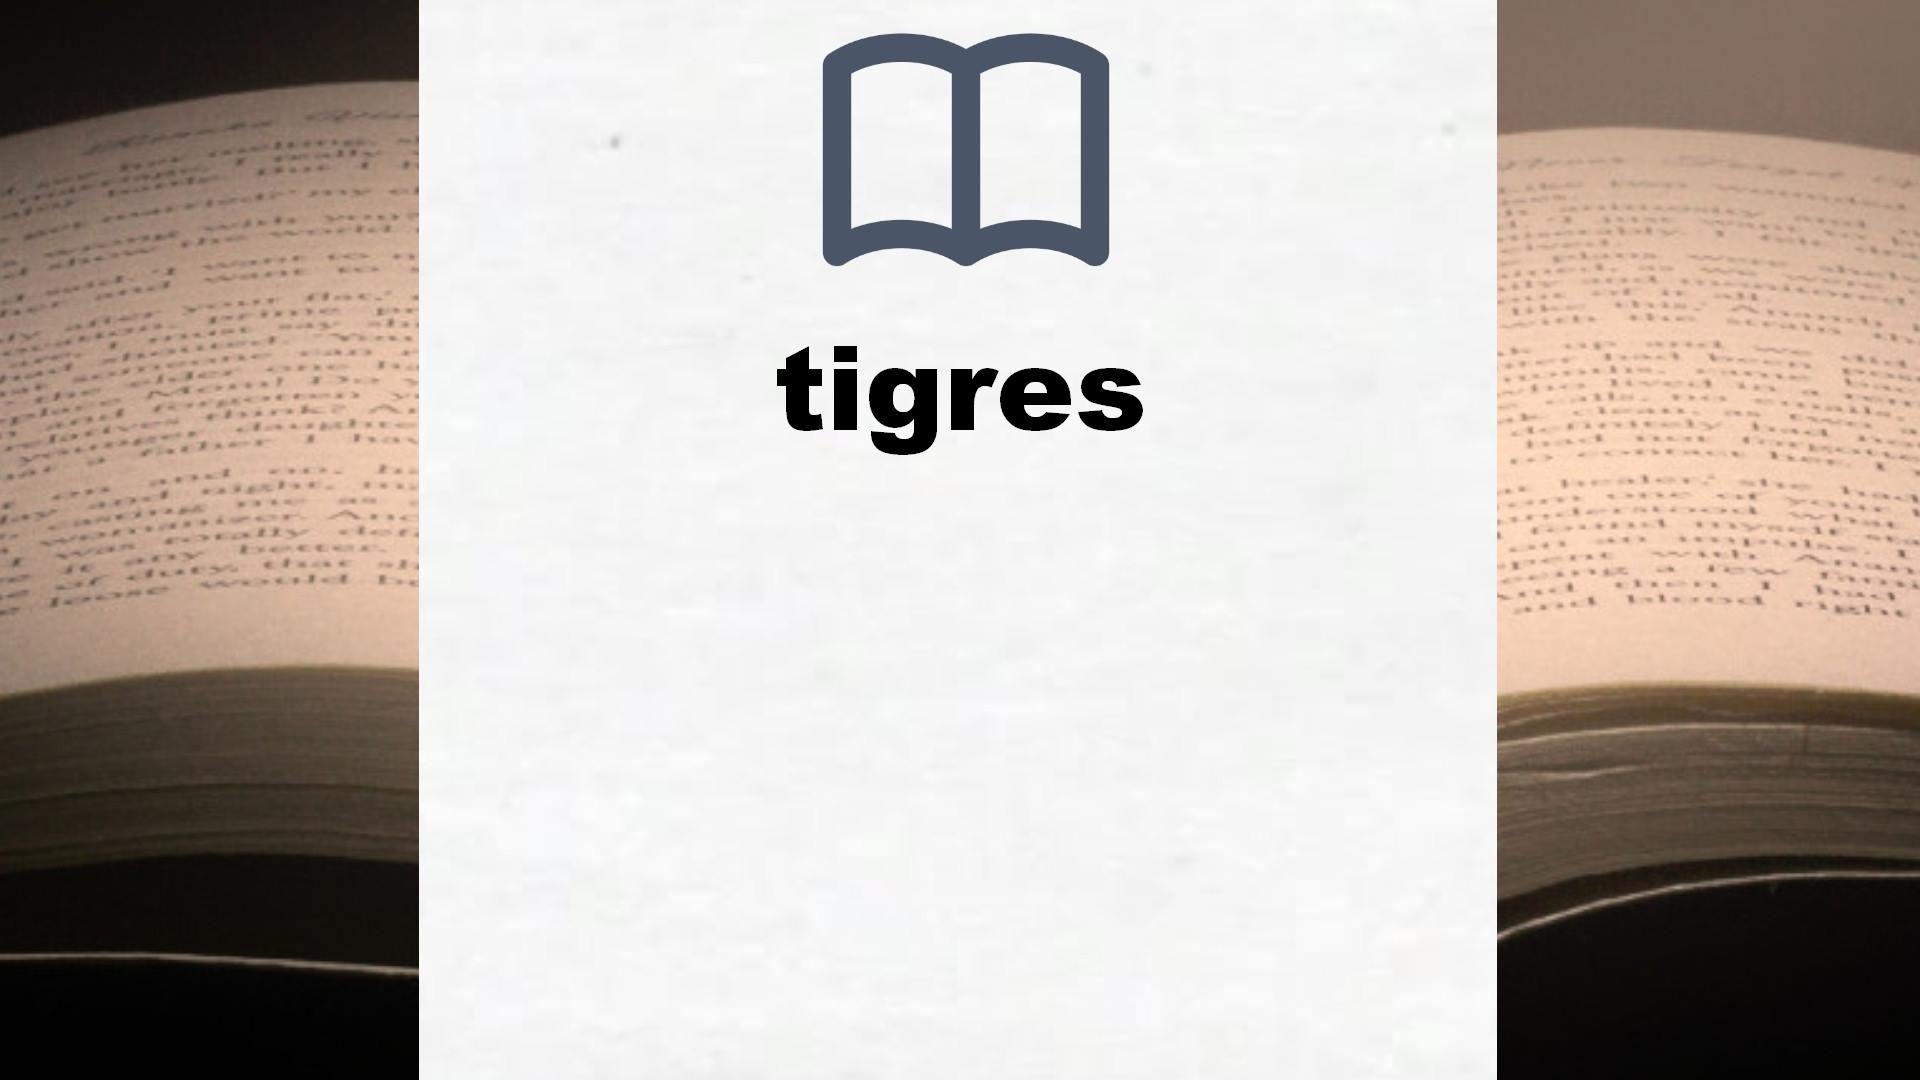 Libros sobre tigres